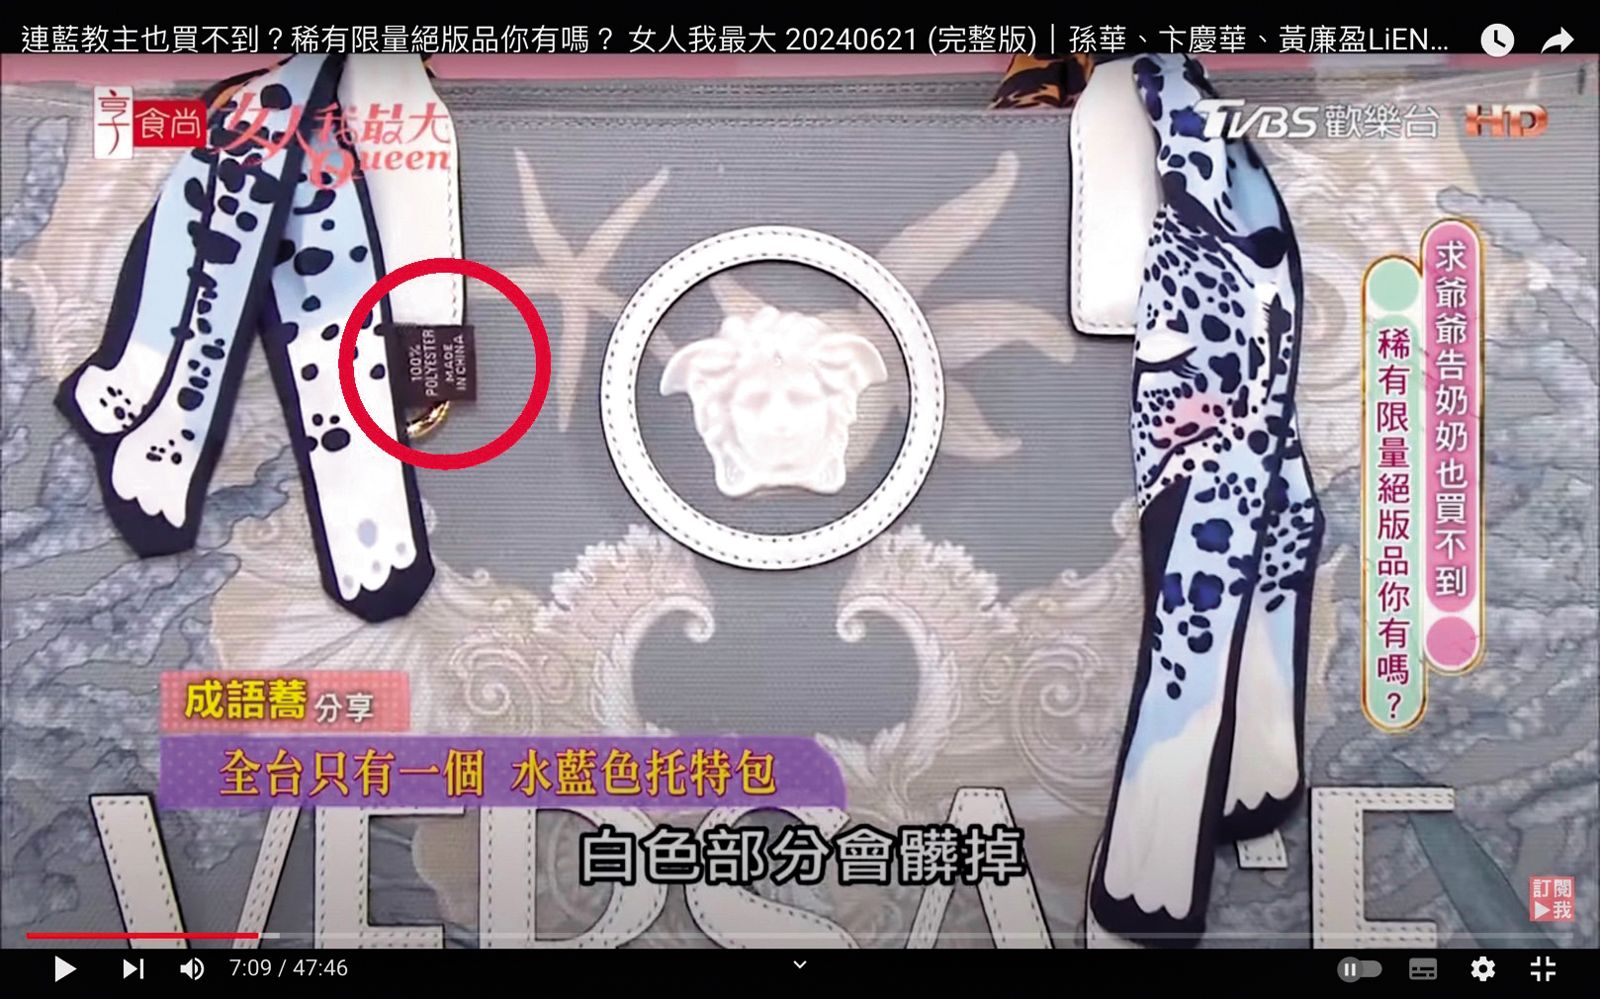 綁在Versace包手把上的愛馬仕絲巾被放大查看，卻看到標籤寫Made in China